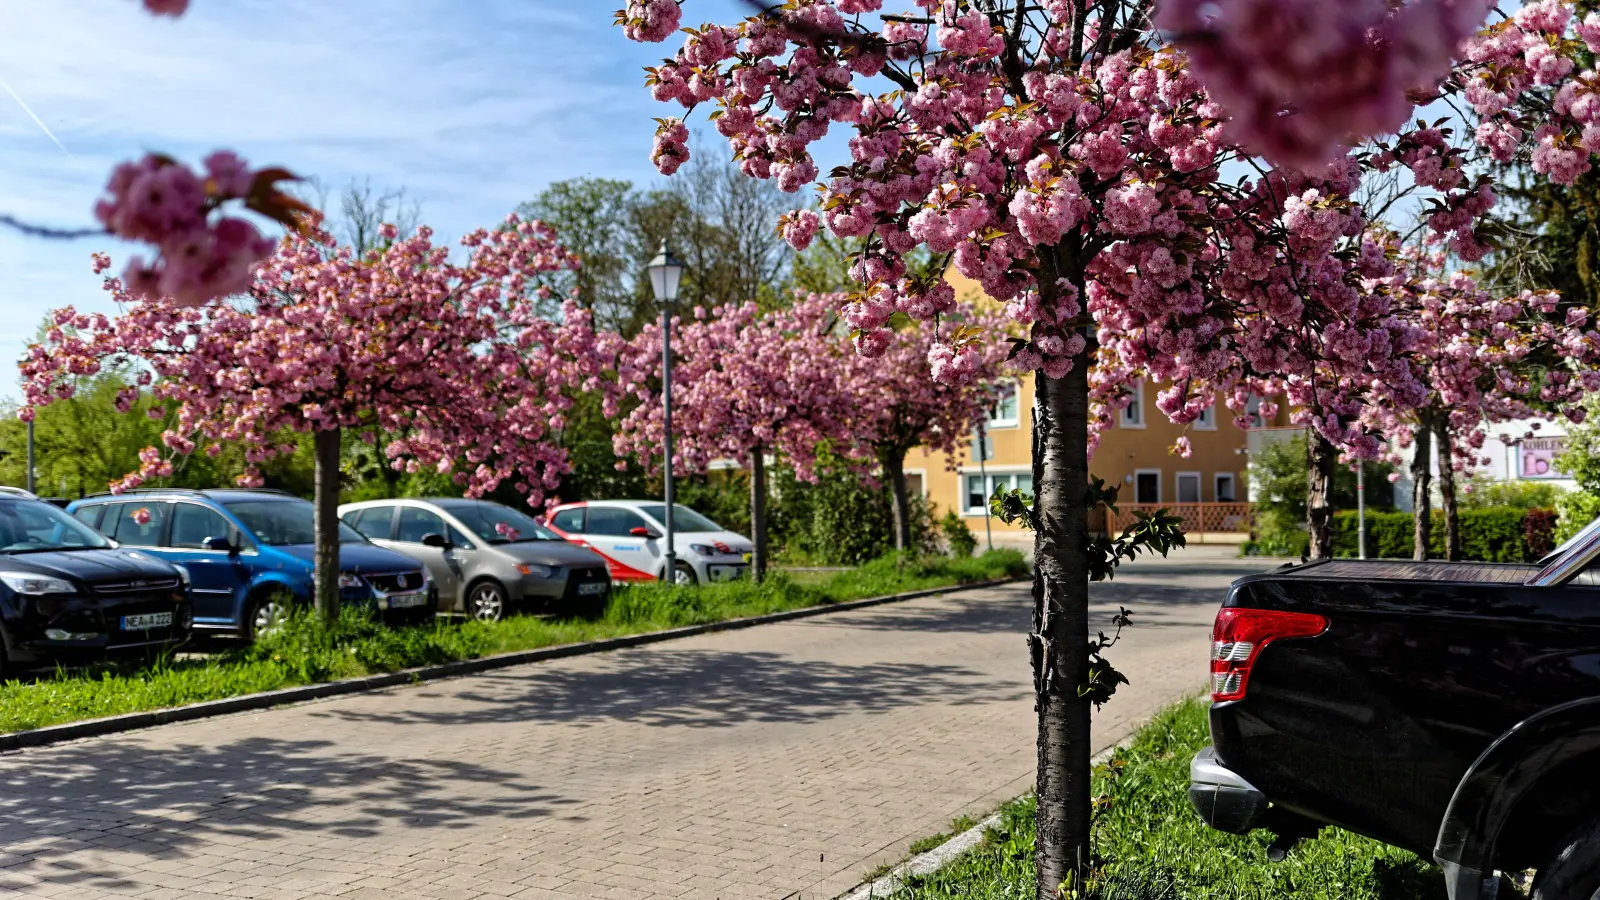 Rund 5000 Bäume dürfte es im Neustädter Stadtgebiet geben – hier die in voller Blütenpracht stehenden japanischen Nelkenkirschen unweit der NeuStadtHalle. (Foto: Tizian Gerbing)